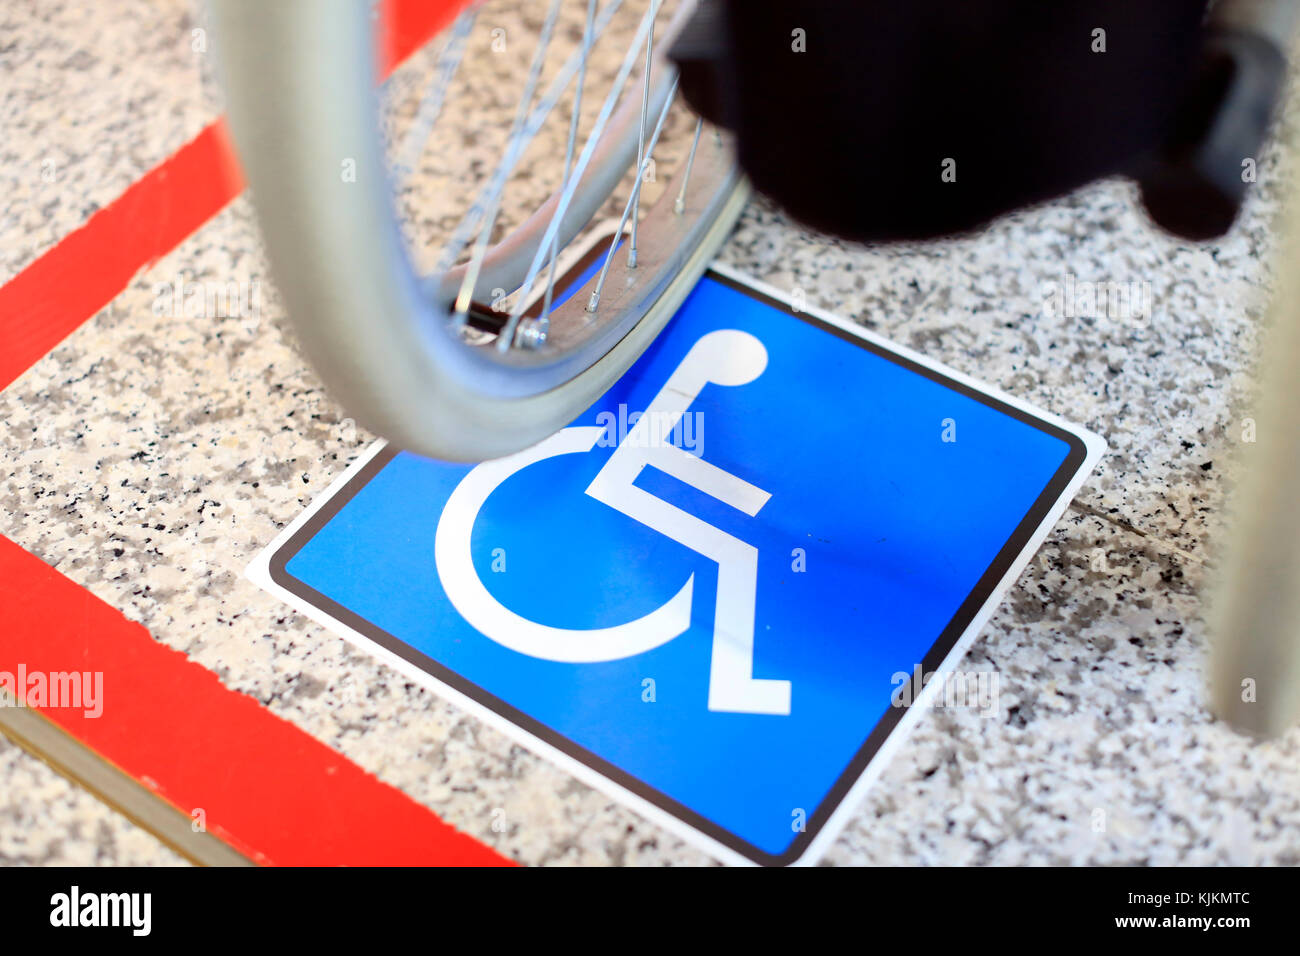 L'aéroport de Genève. Stationnement pour handicapés et des fauteuils roulants. La Suisse. Banque D'Images